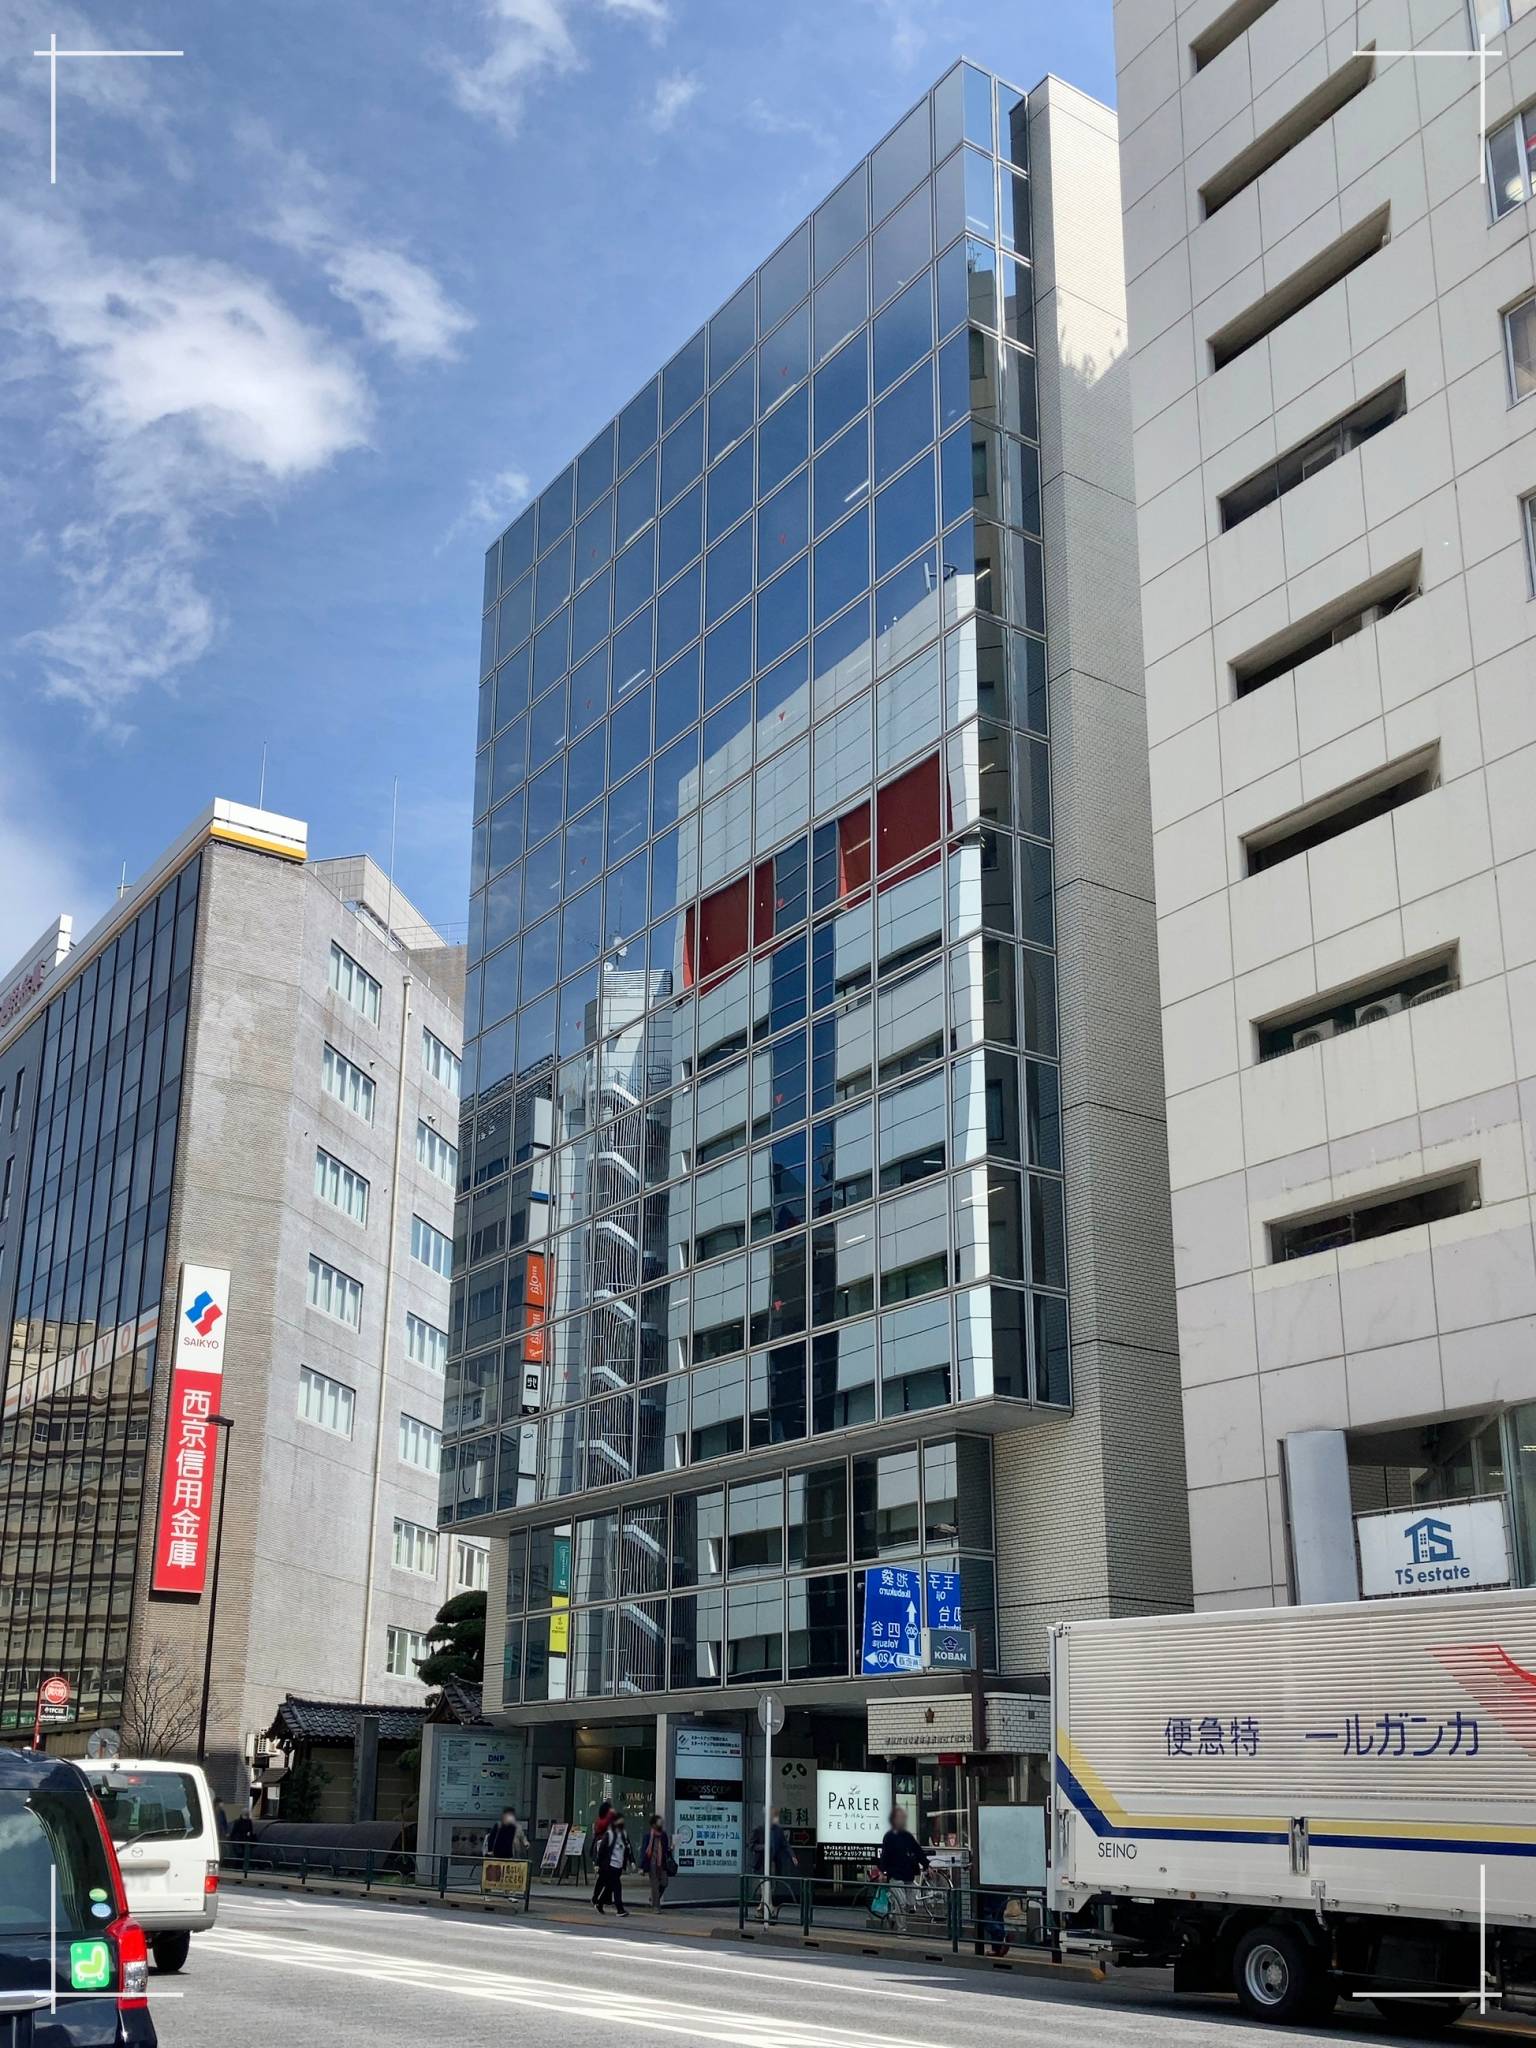 220328-「ZXY 新宿南口」が入居しているビルの外観